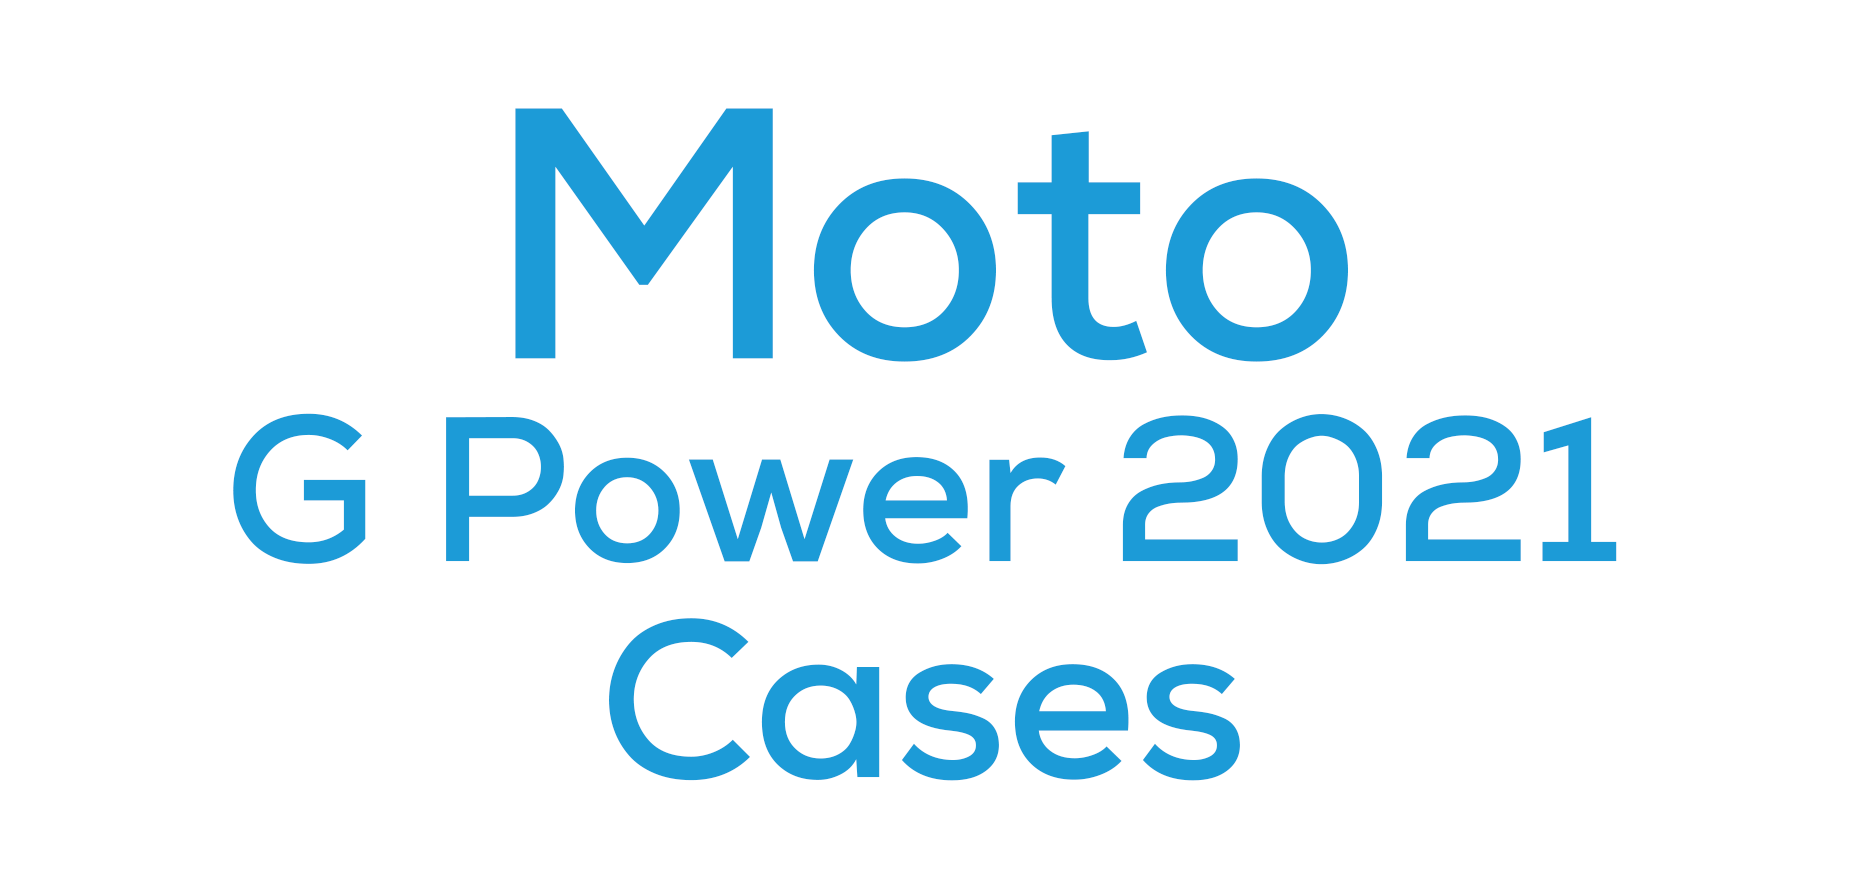 Moto G Power 2021 Cases